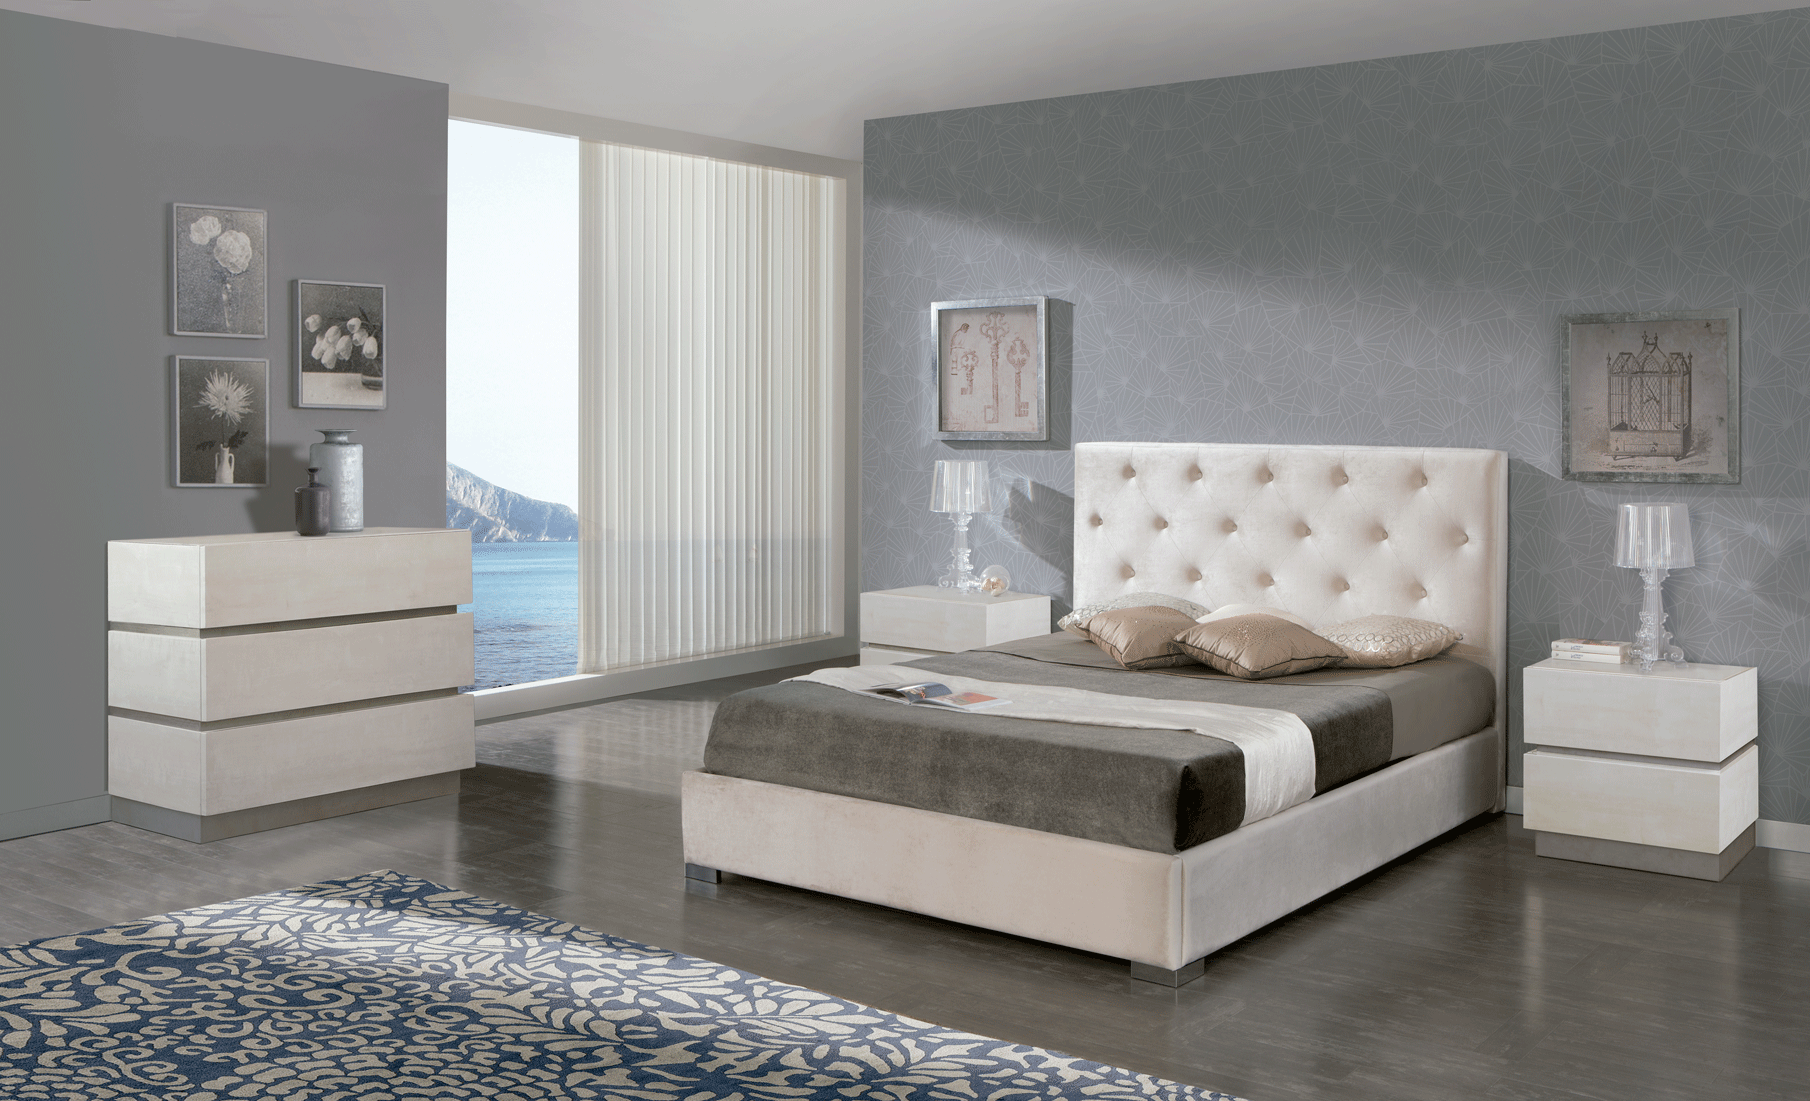 Bedroom Furniture Beds 626 Ana, M-151, C-151, 6010-C1